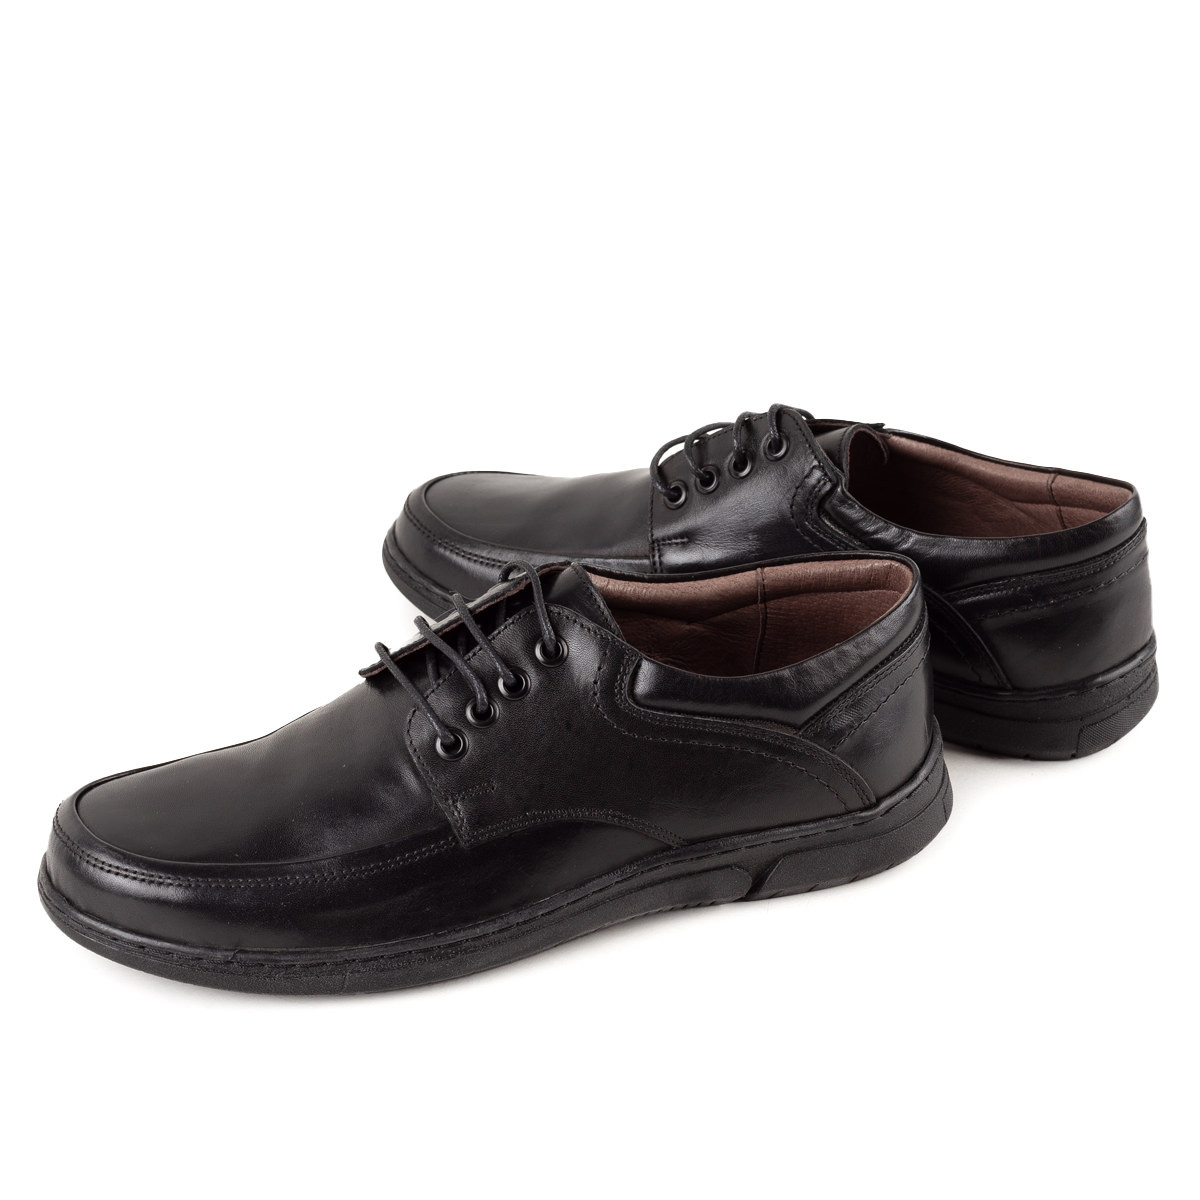 remaining scratch guard Pantofi casual barbati piele naturala 2016 negru